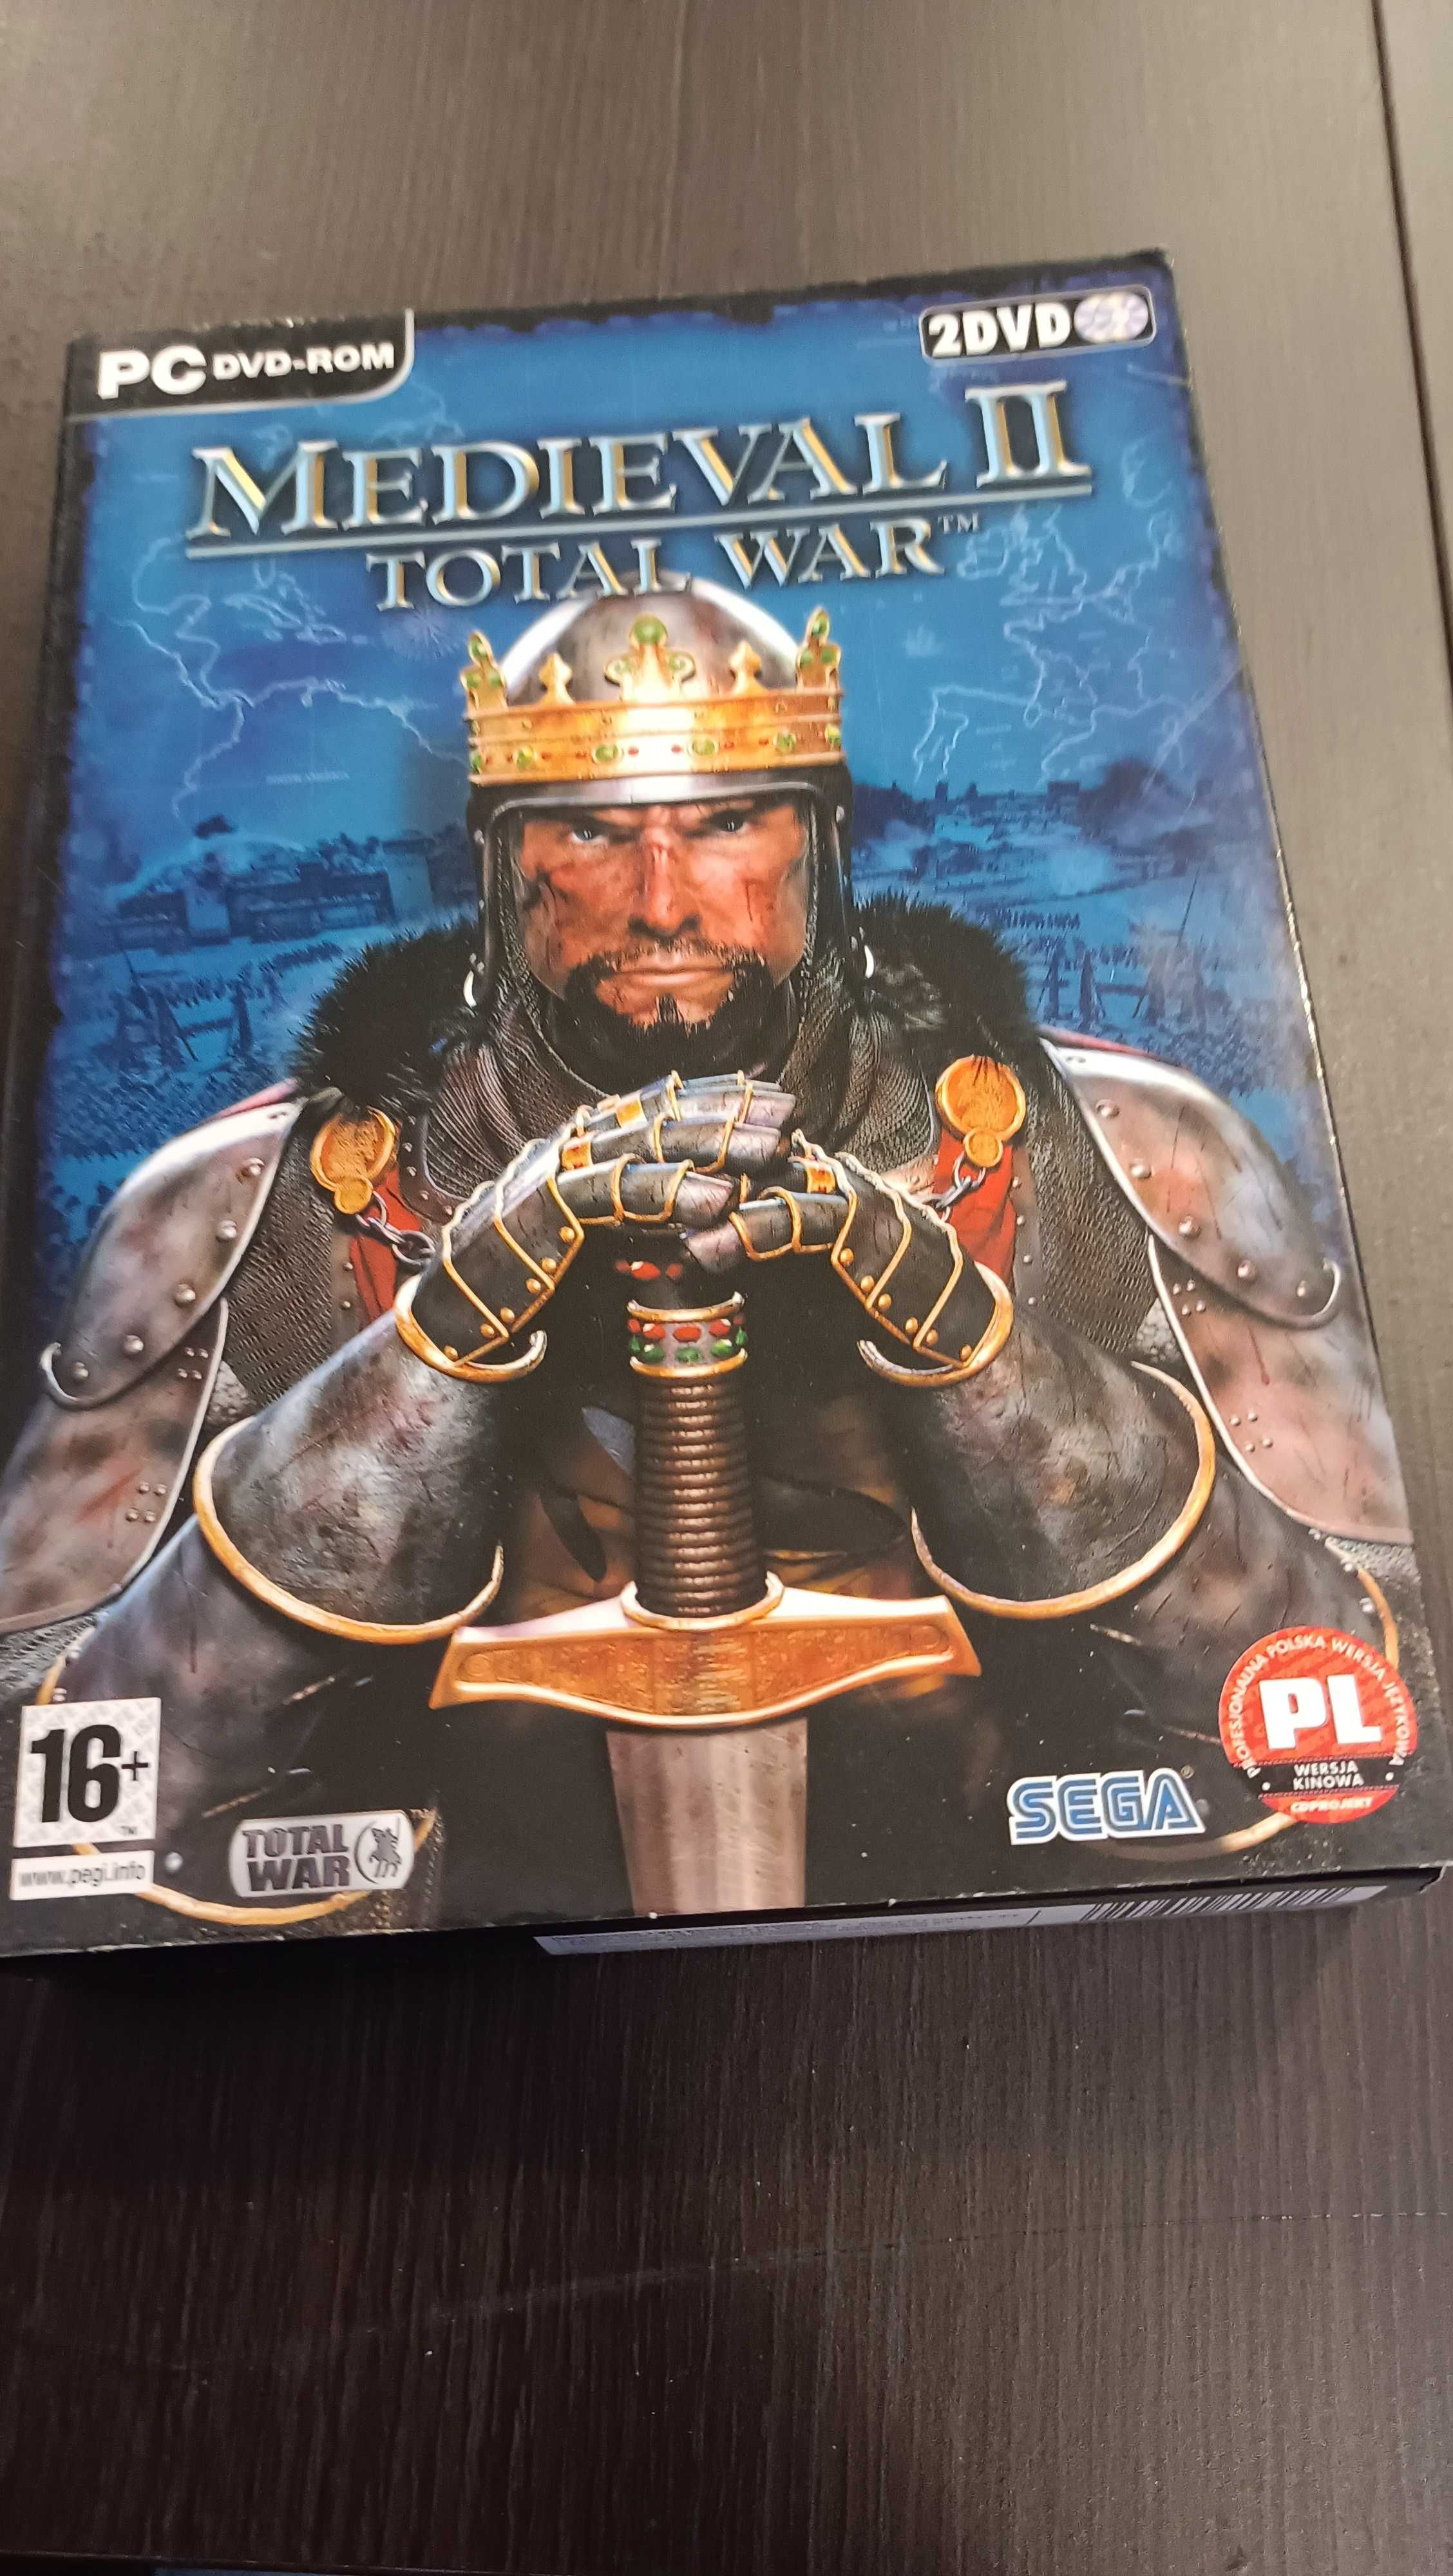 Medieval II Total War kolekcjonerskie wydanie PL PC